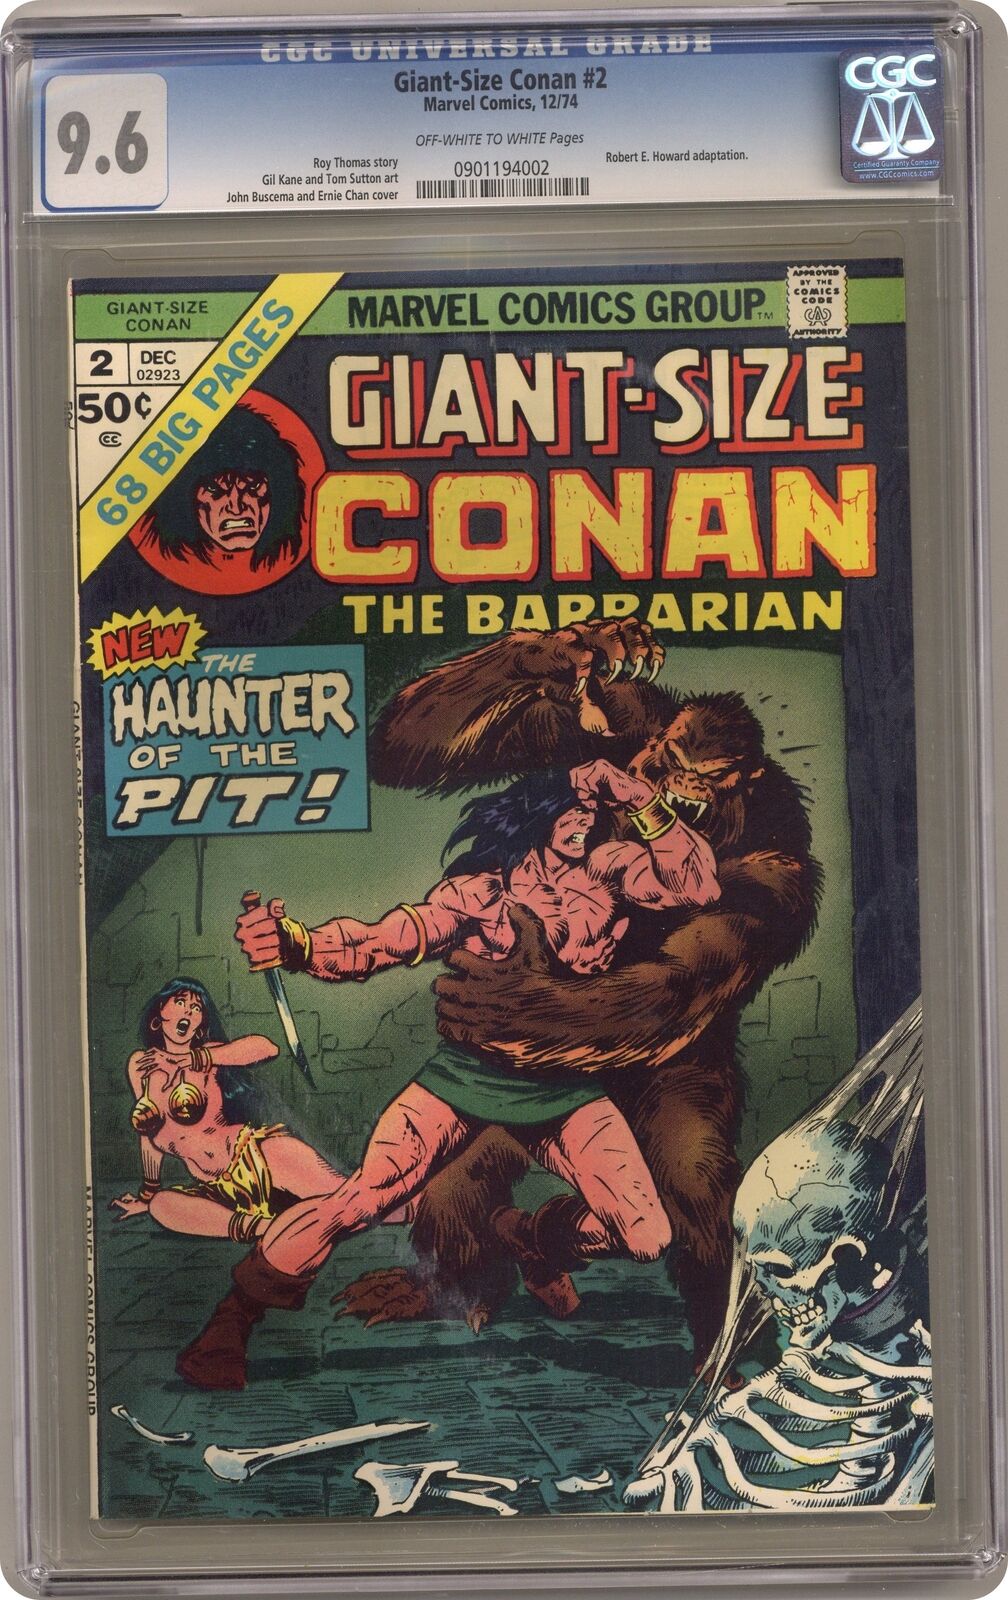 Giant Size Conan #2 CGC 9.6 1974 0901194002